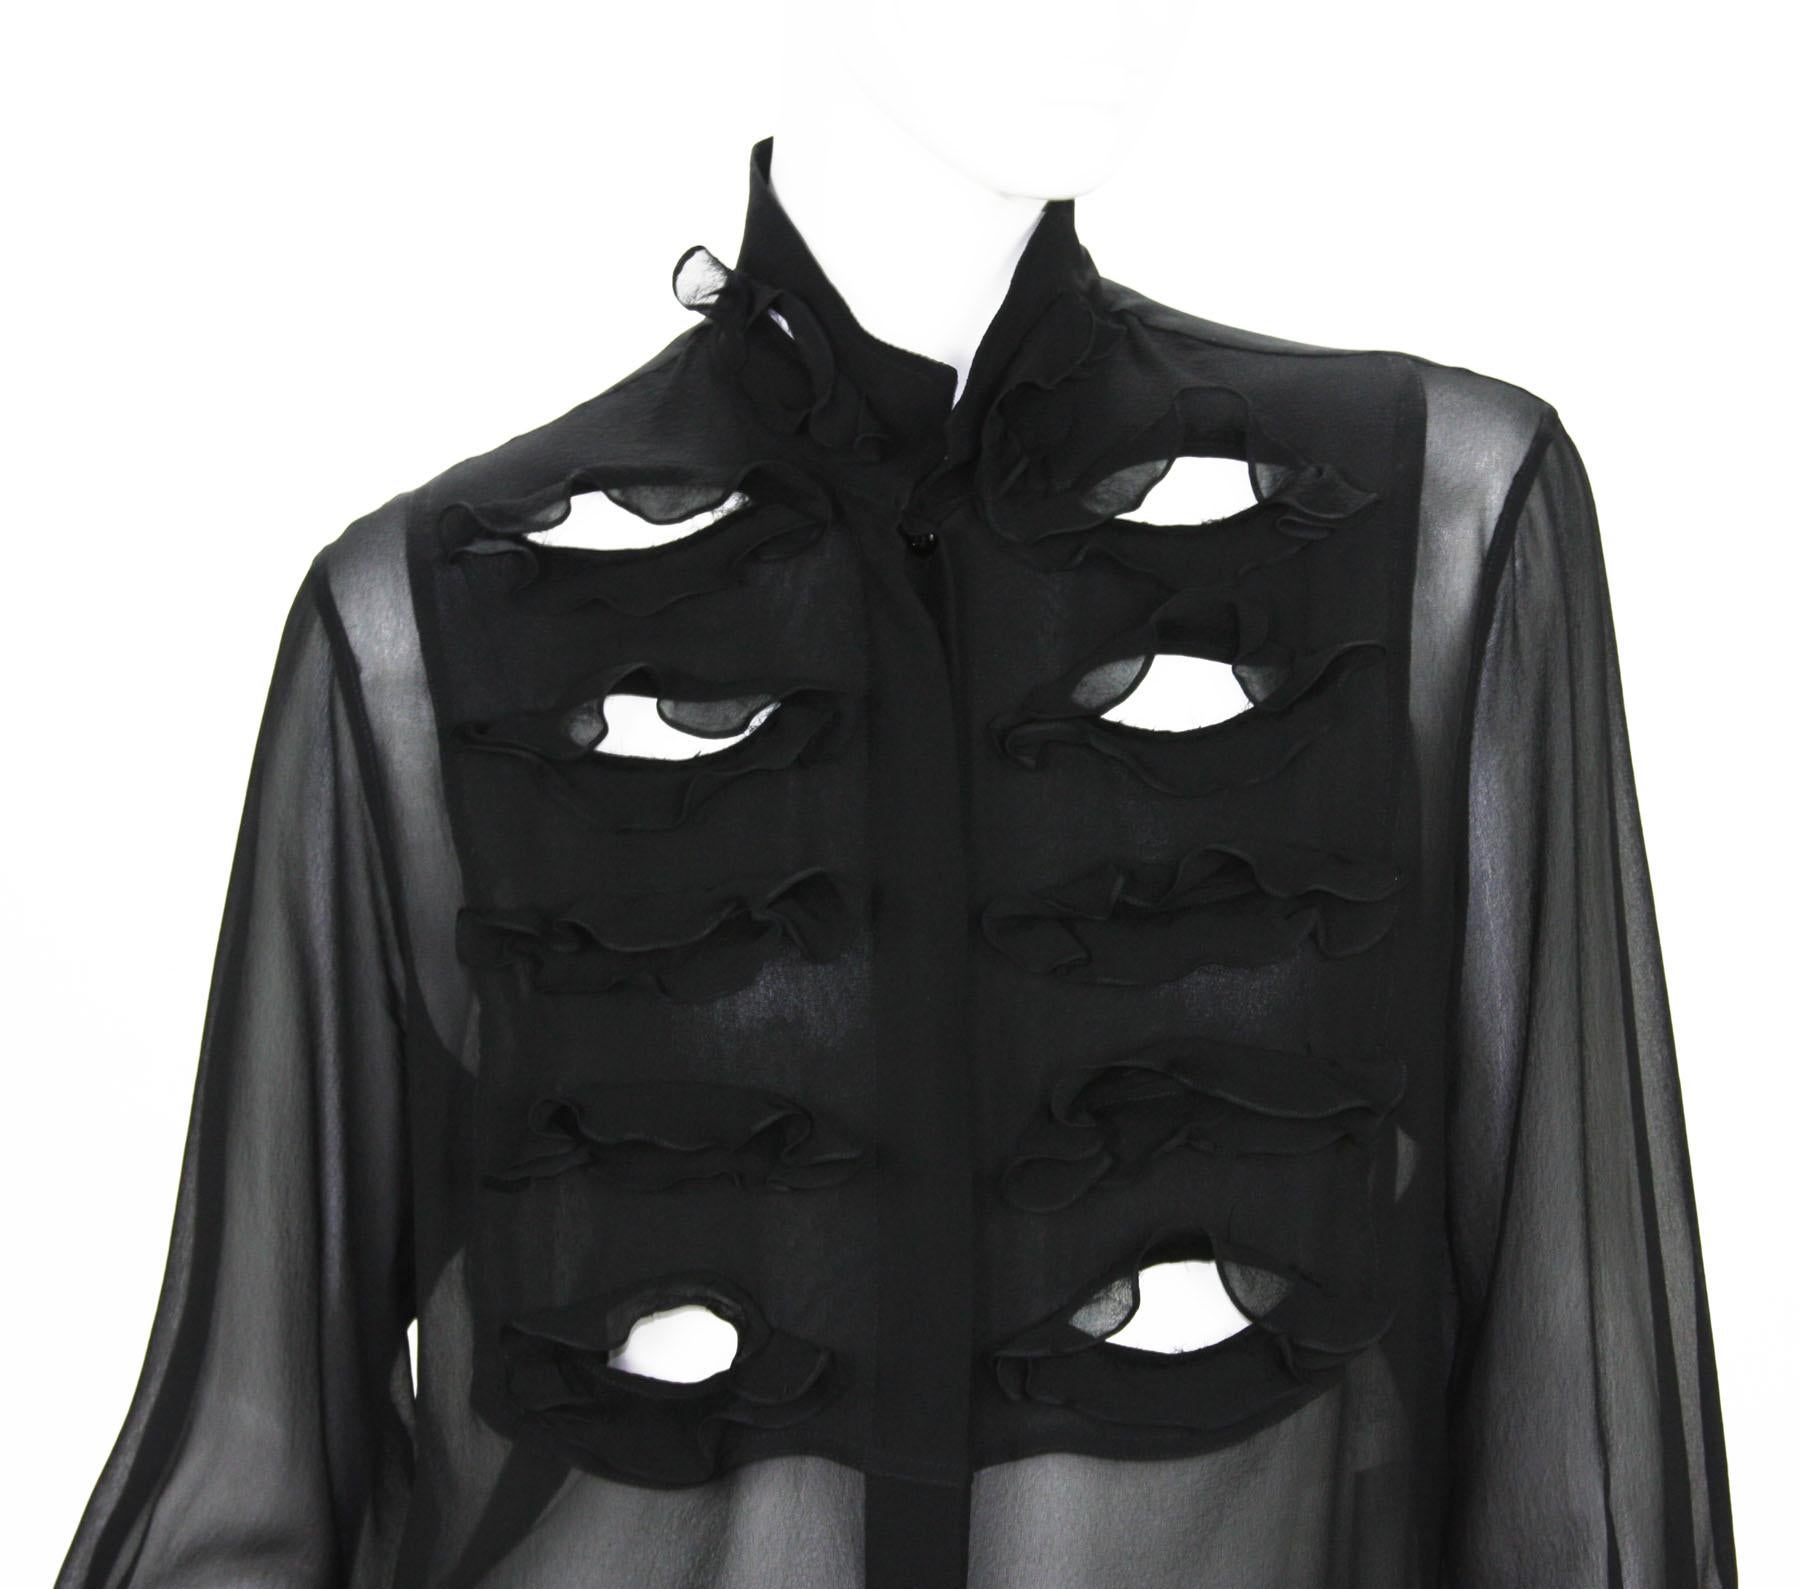 Tom Ford for Yves Saint Laurent 2001-2003 Collection Silk Top Velvet Skirt Suit  For Sale 2